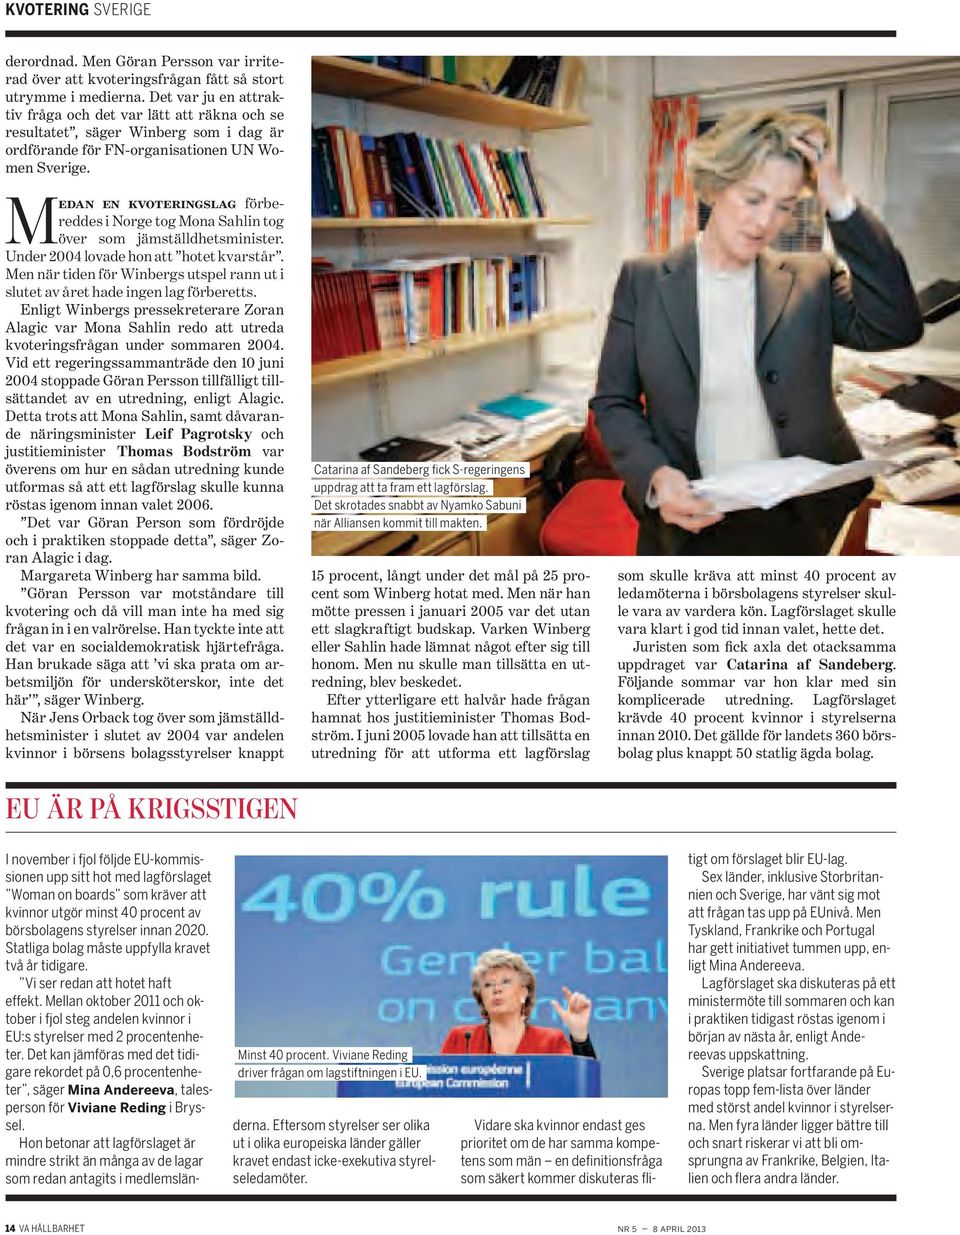 Medan en kvoteringslag förbereddes i Norge tog Mona Sahlin tog över som jämställdhetsminister. Under 2004 lovade hon att hotet kvarstår.